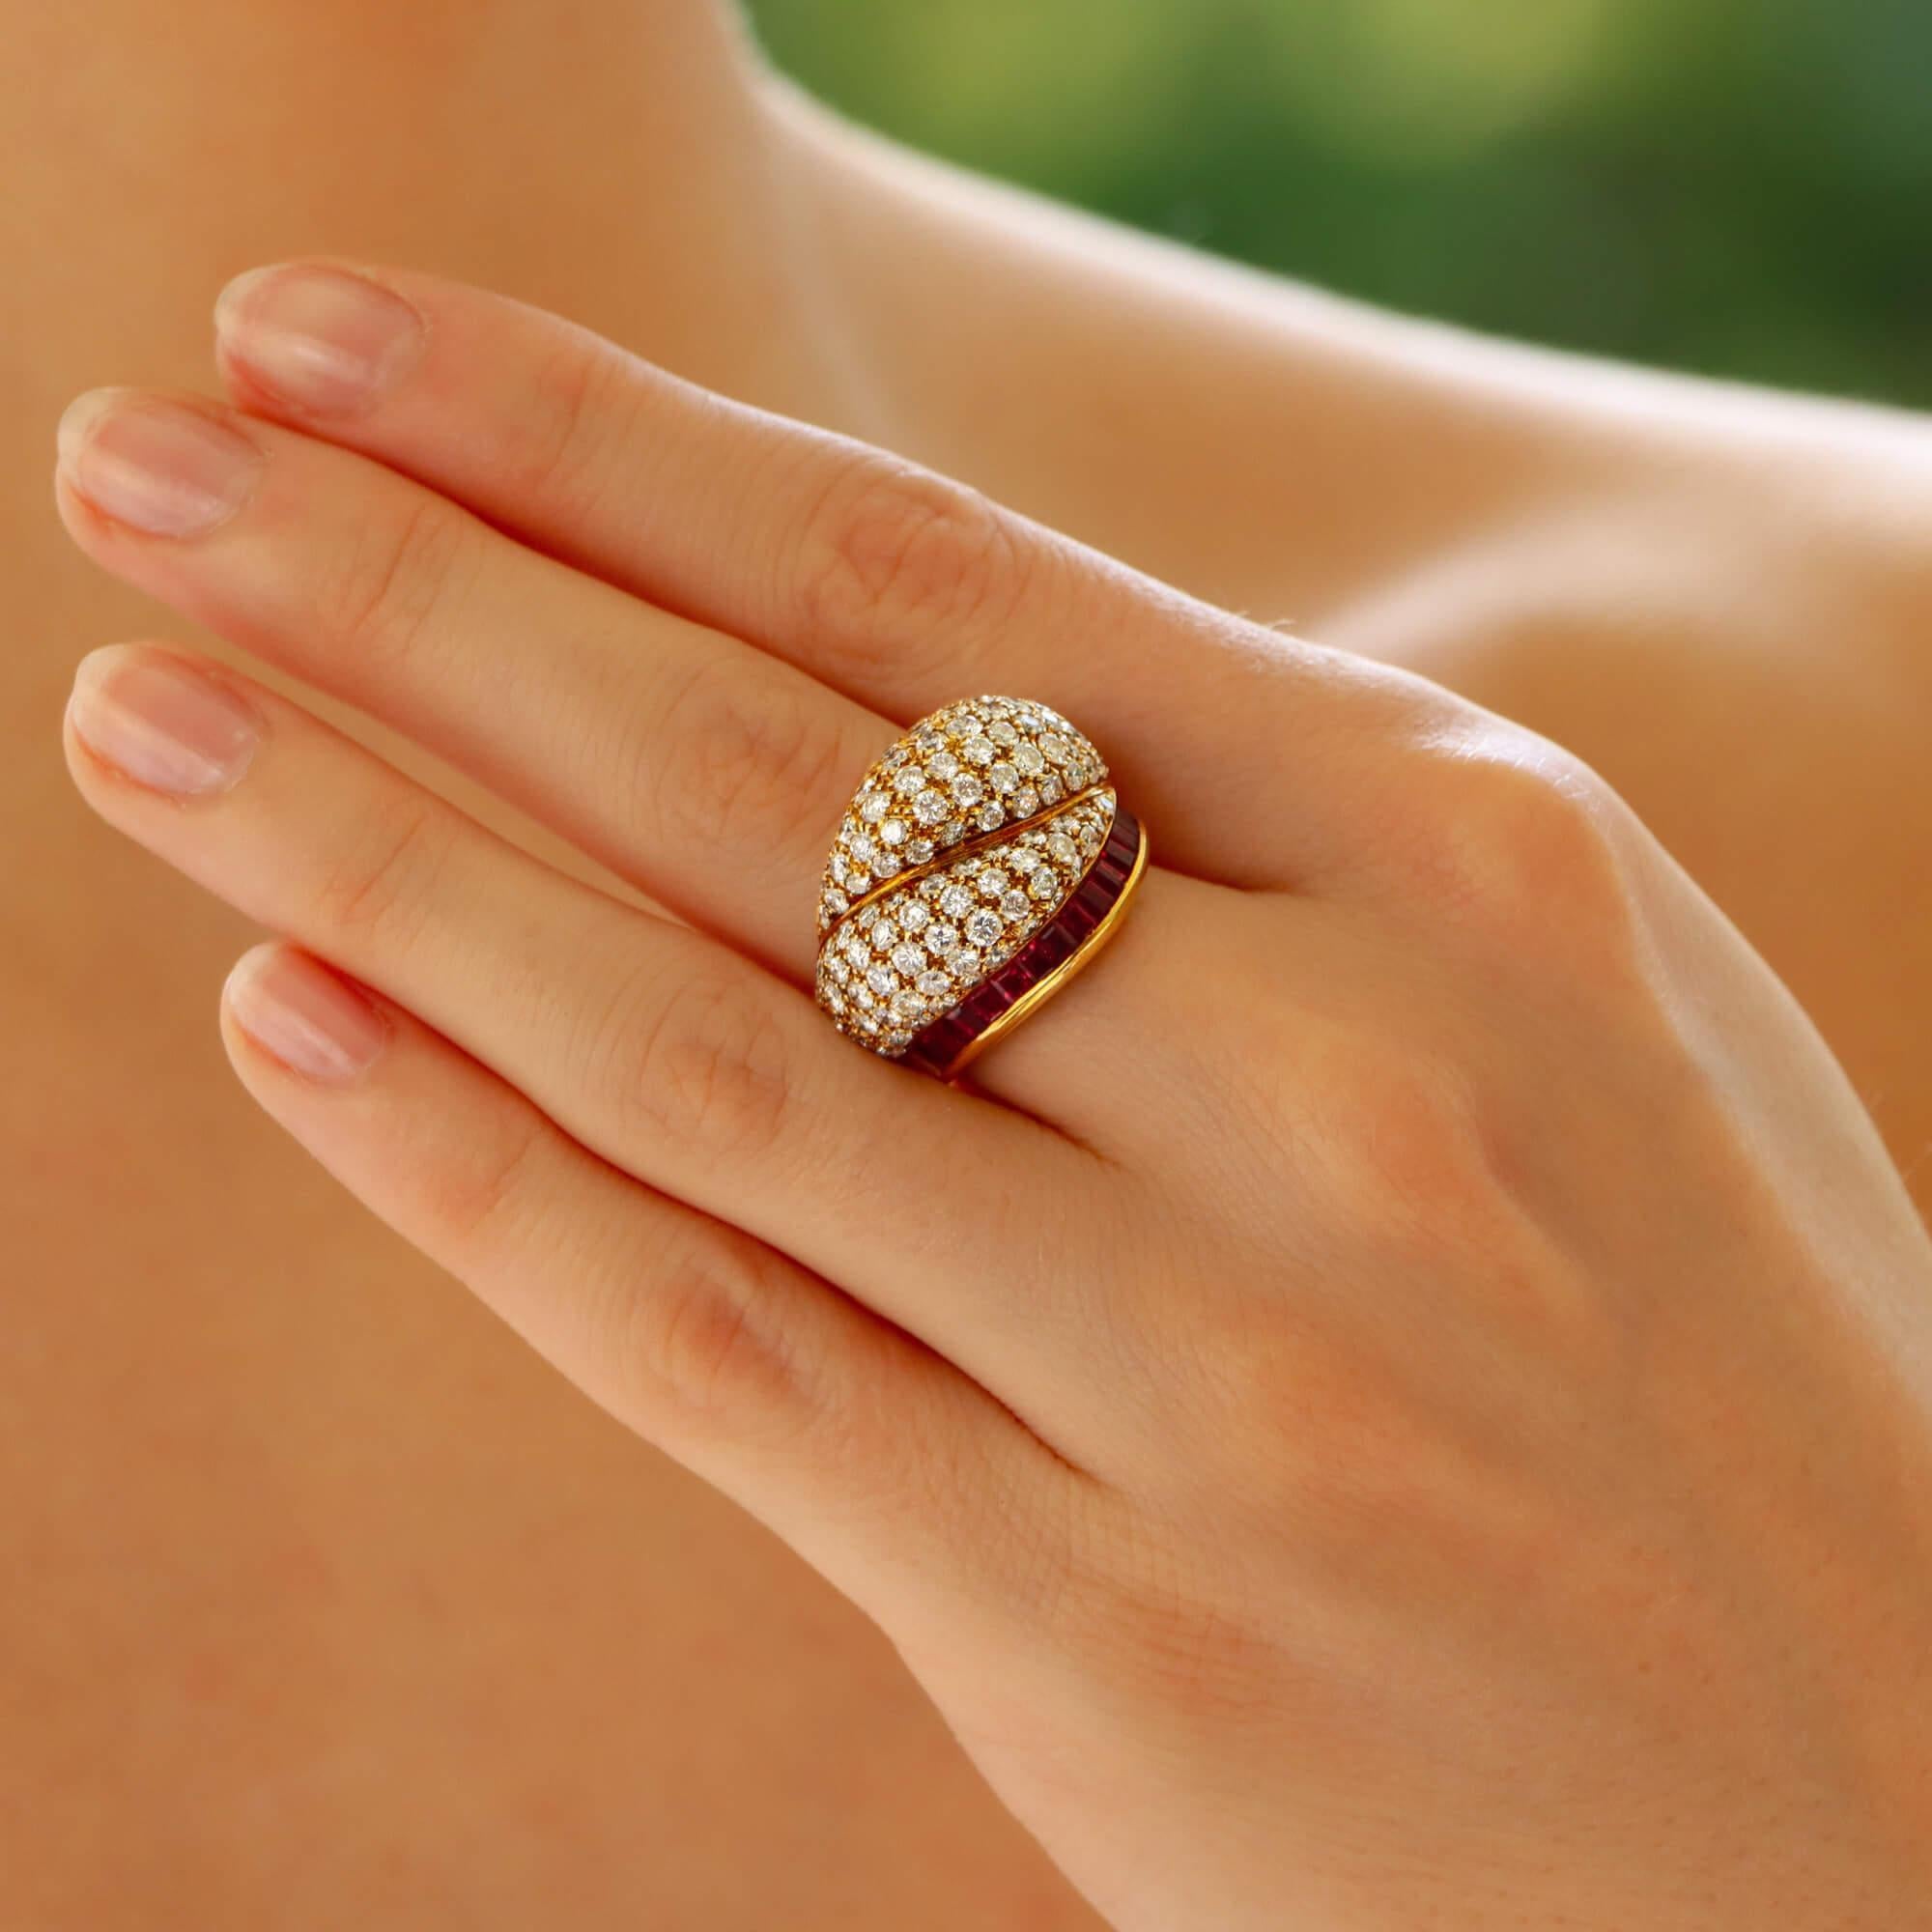 Ein extrem auffälliger Vintage Tiffany & Co. Diamant und Rubin Bombé Ring in 18k Gelbgold gesetzt.

Dieses wunderschöne Schmuckstück besteht hauptsächlich aus zwei Bombé-Motiven, die vollständig mit ca. 113 runden Diamanten im Brillantschliff